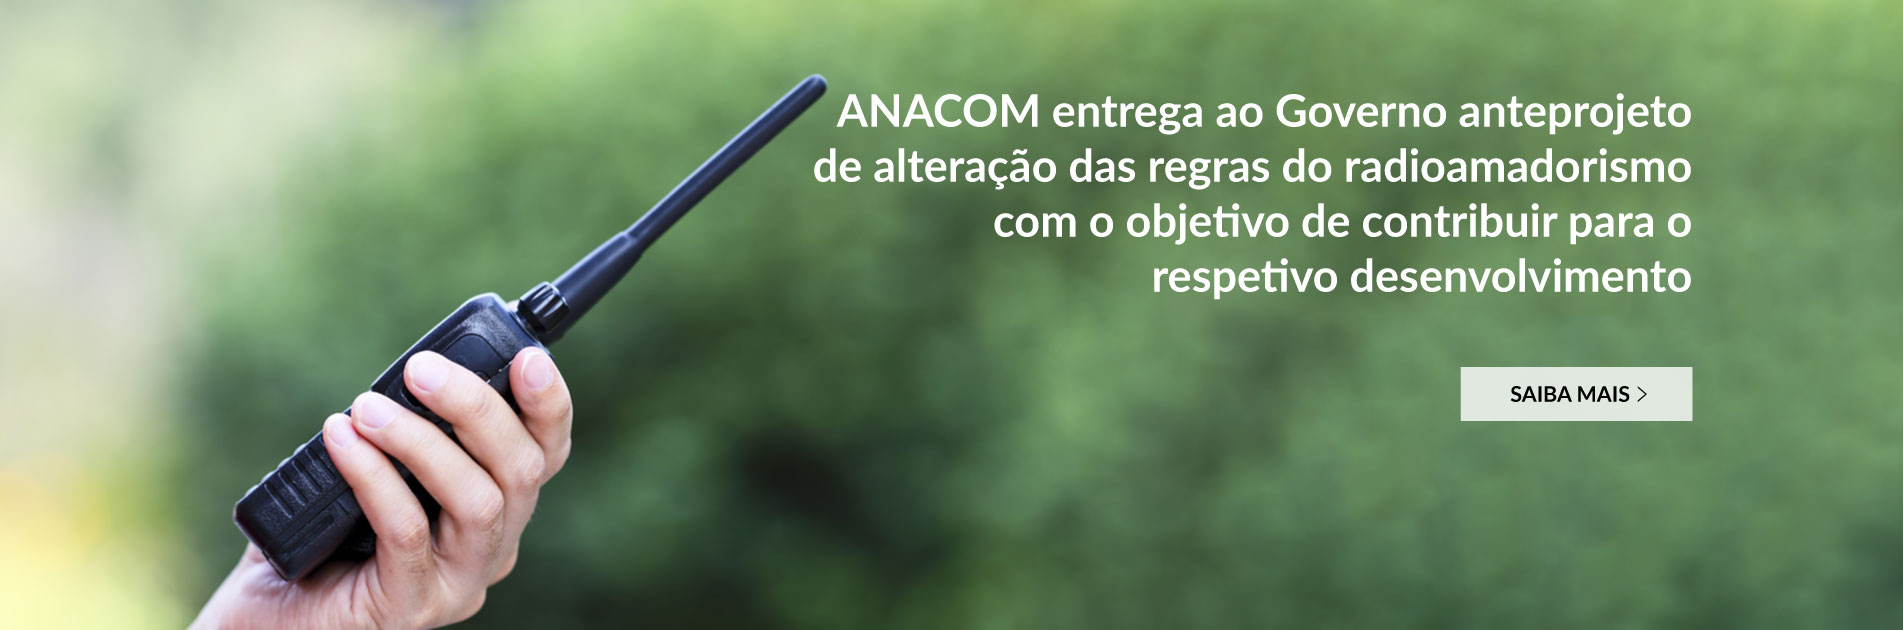 ANACOM entrega ao Governo anteprojeto de alteração das regras do radioamadorismo com o objetivo de contribuir para o respetivo desenvolvimento.